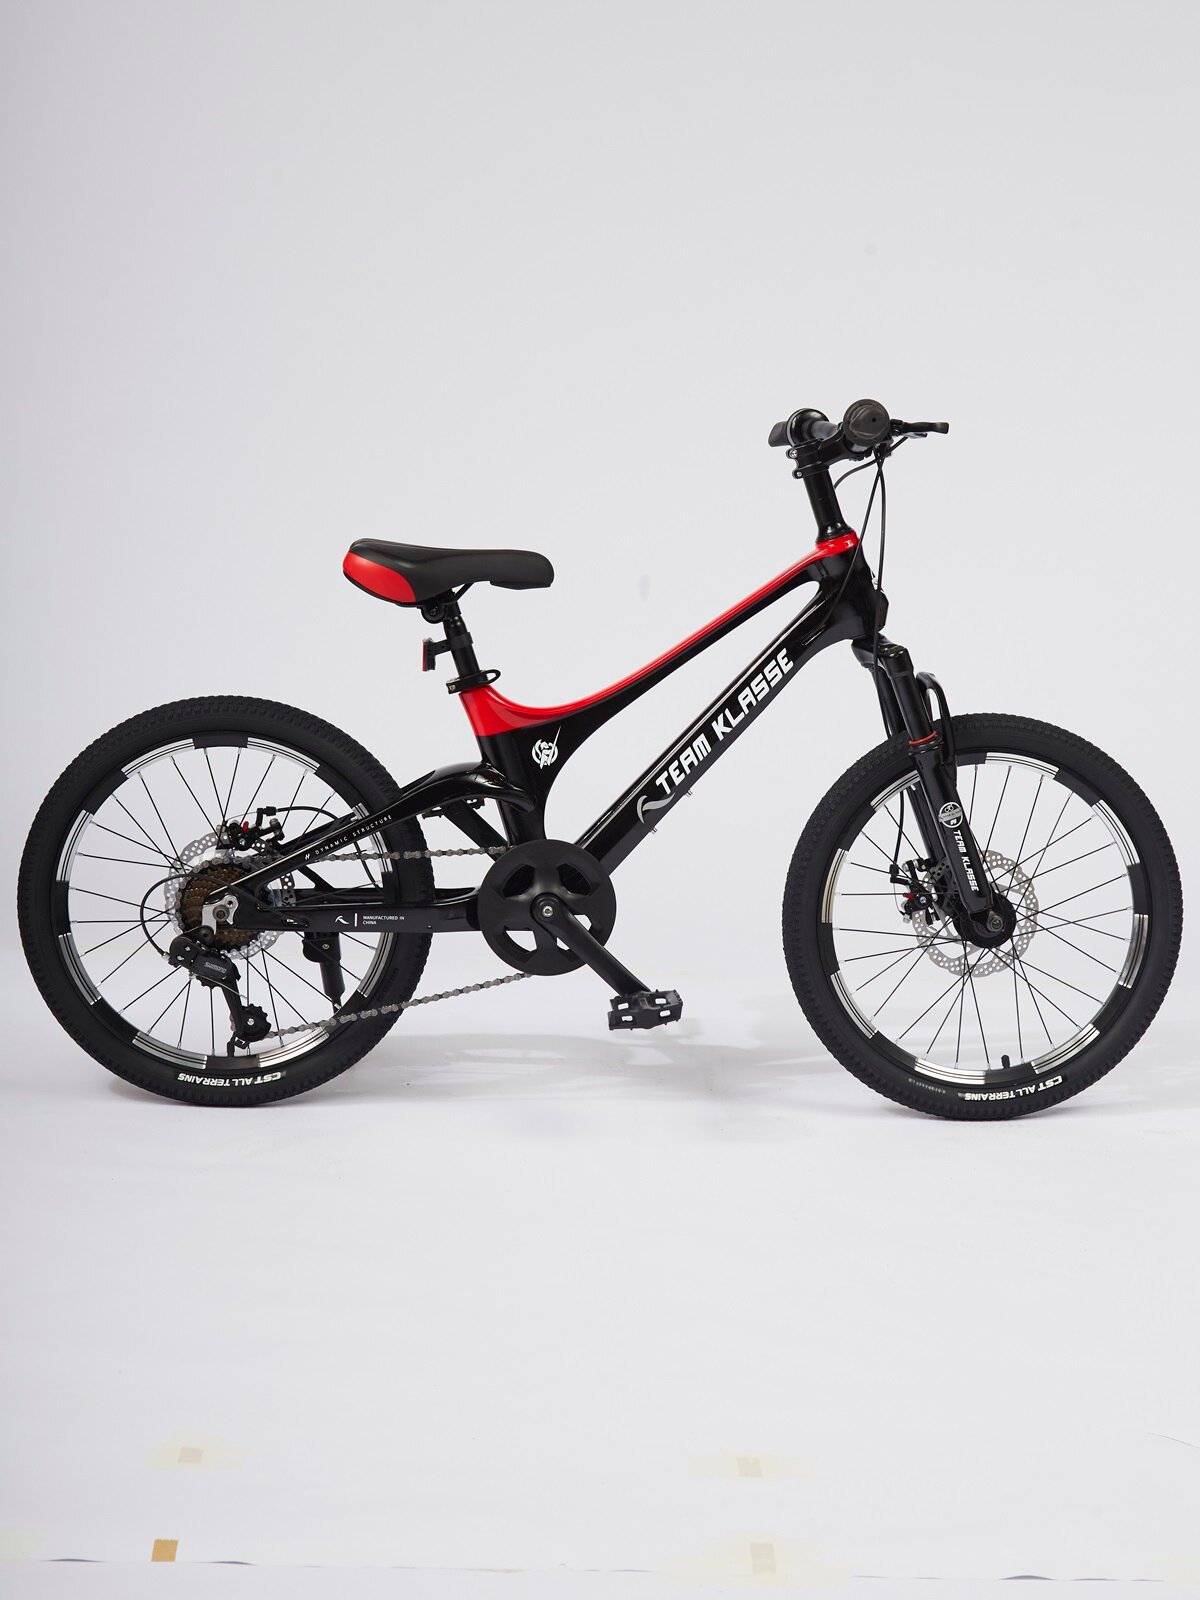 Горный детский велосипед Team Klasse F-3-B, черный, красный, диаметр колес 20 дюймов